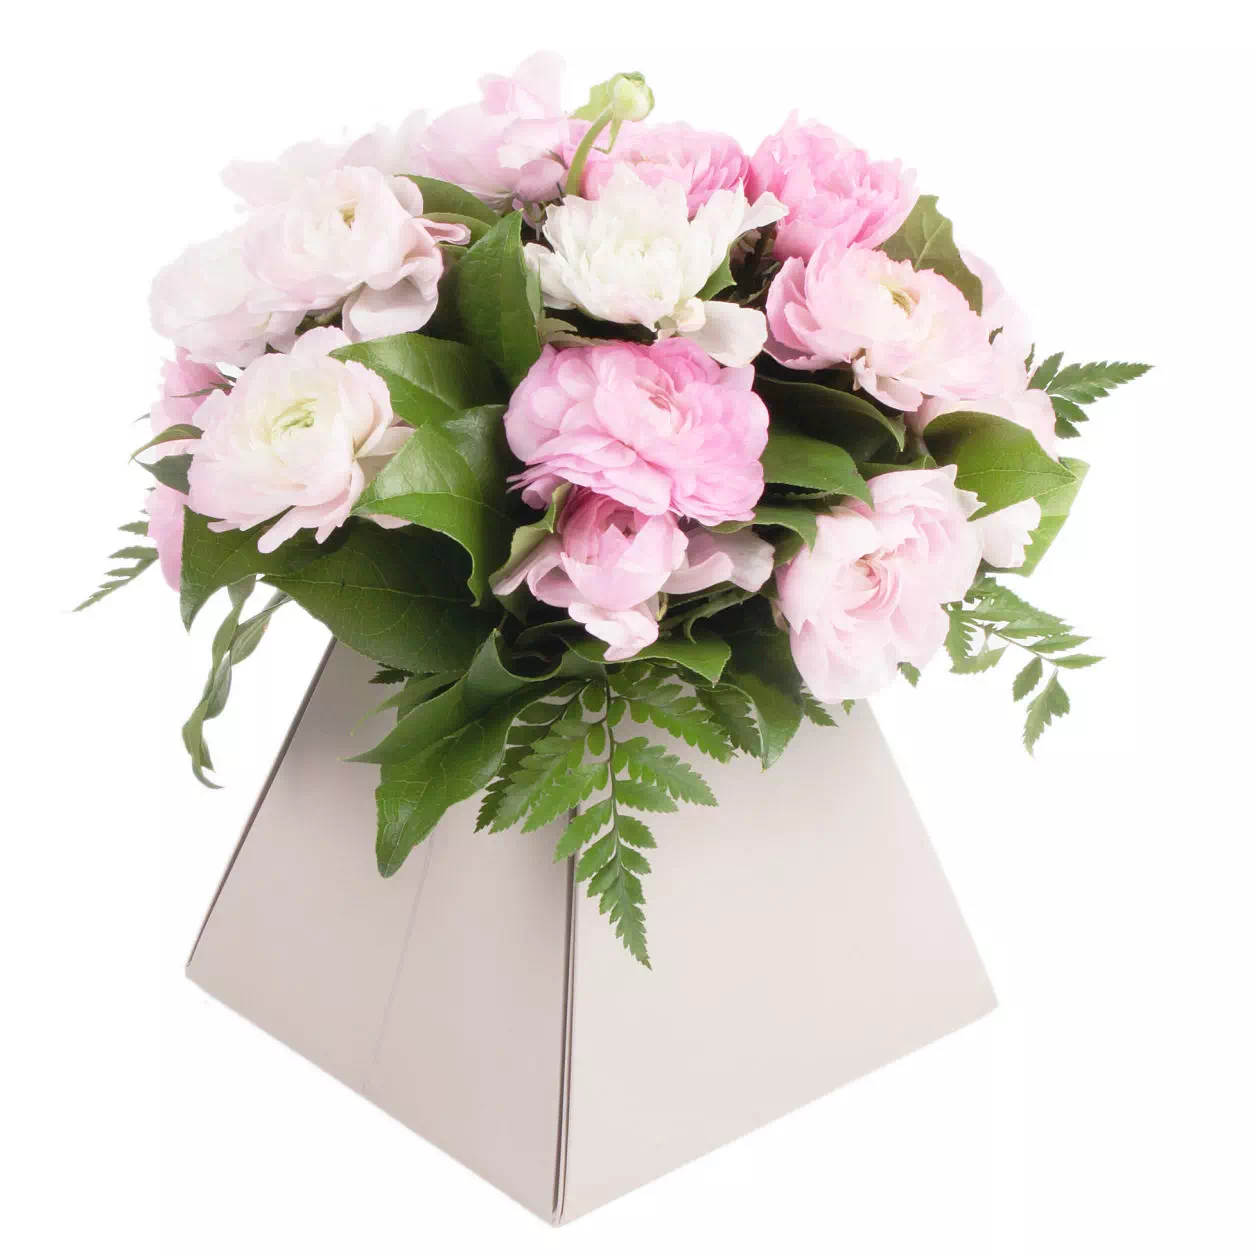 bouquet de fleurs présenté dans un sac fleuriste blanc pyramidal.